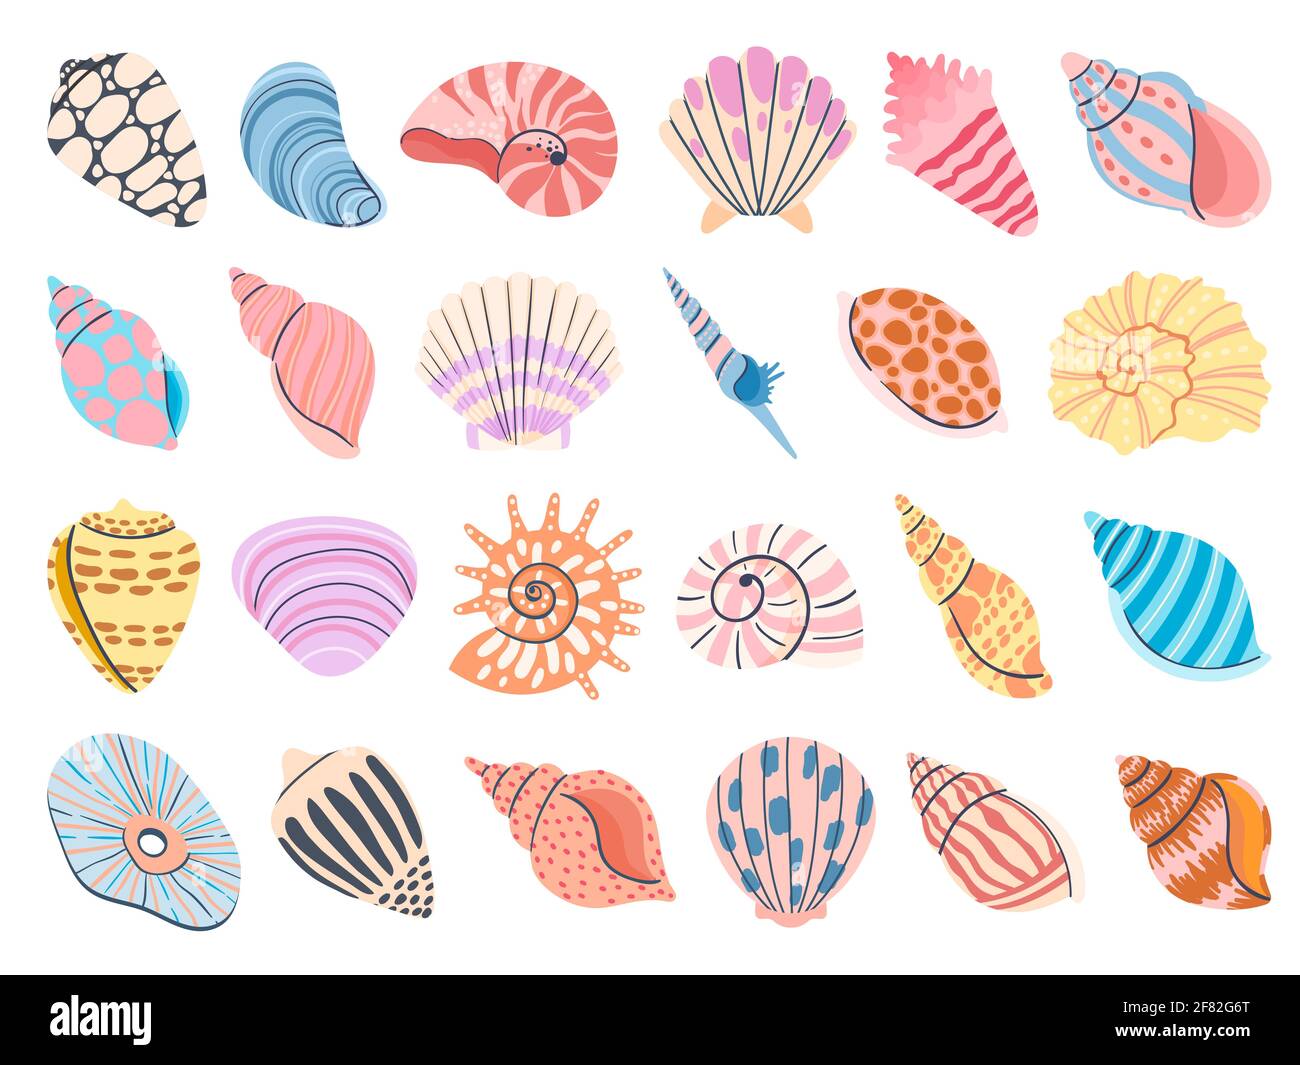 Coquillage tropical. Coquillages, huîtres et coquilles Saint-Jacques. Des conches sous-marines colorées de mollusques et d'escargots marins. Ensemble de vecteurs de coquillages Illustration de Vecteur